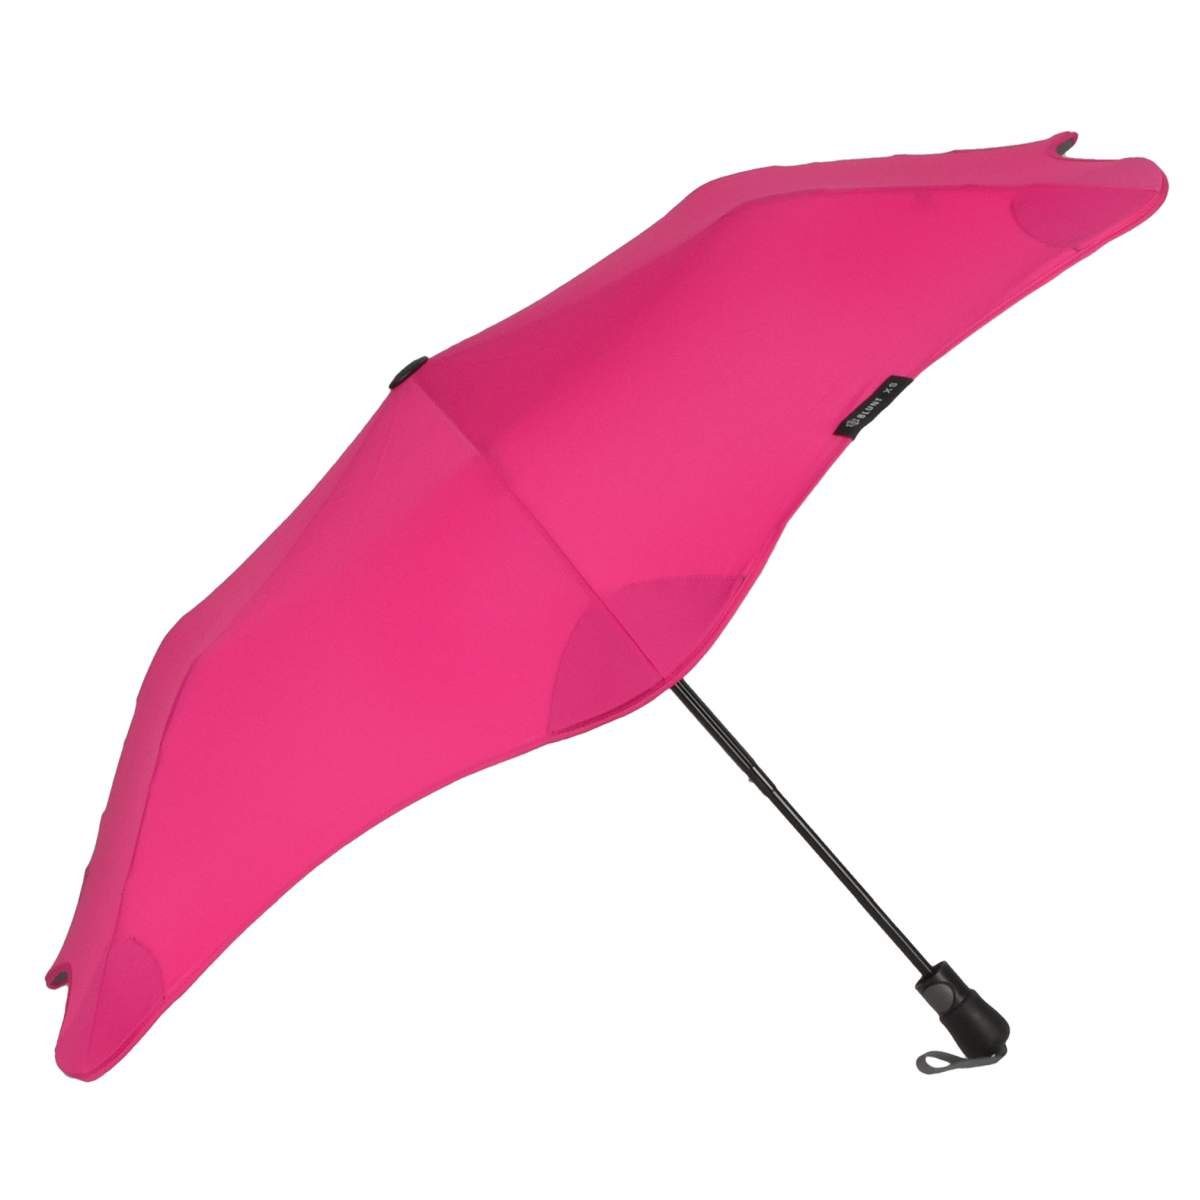 Blunt Taschenregenschirm Metro, Regenschirm, Taschenschirm, für Auto und unterwegs, 96cm Durchmesser pink